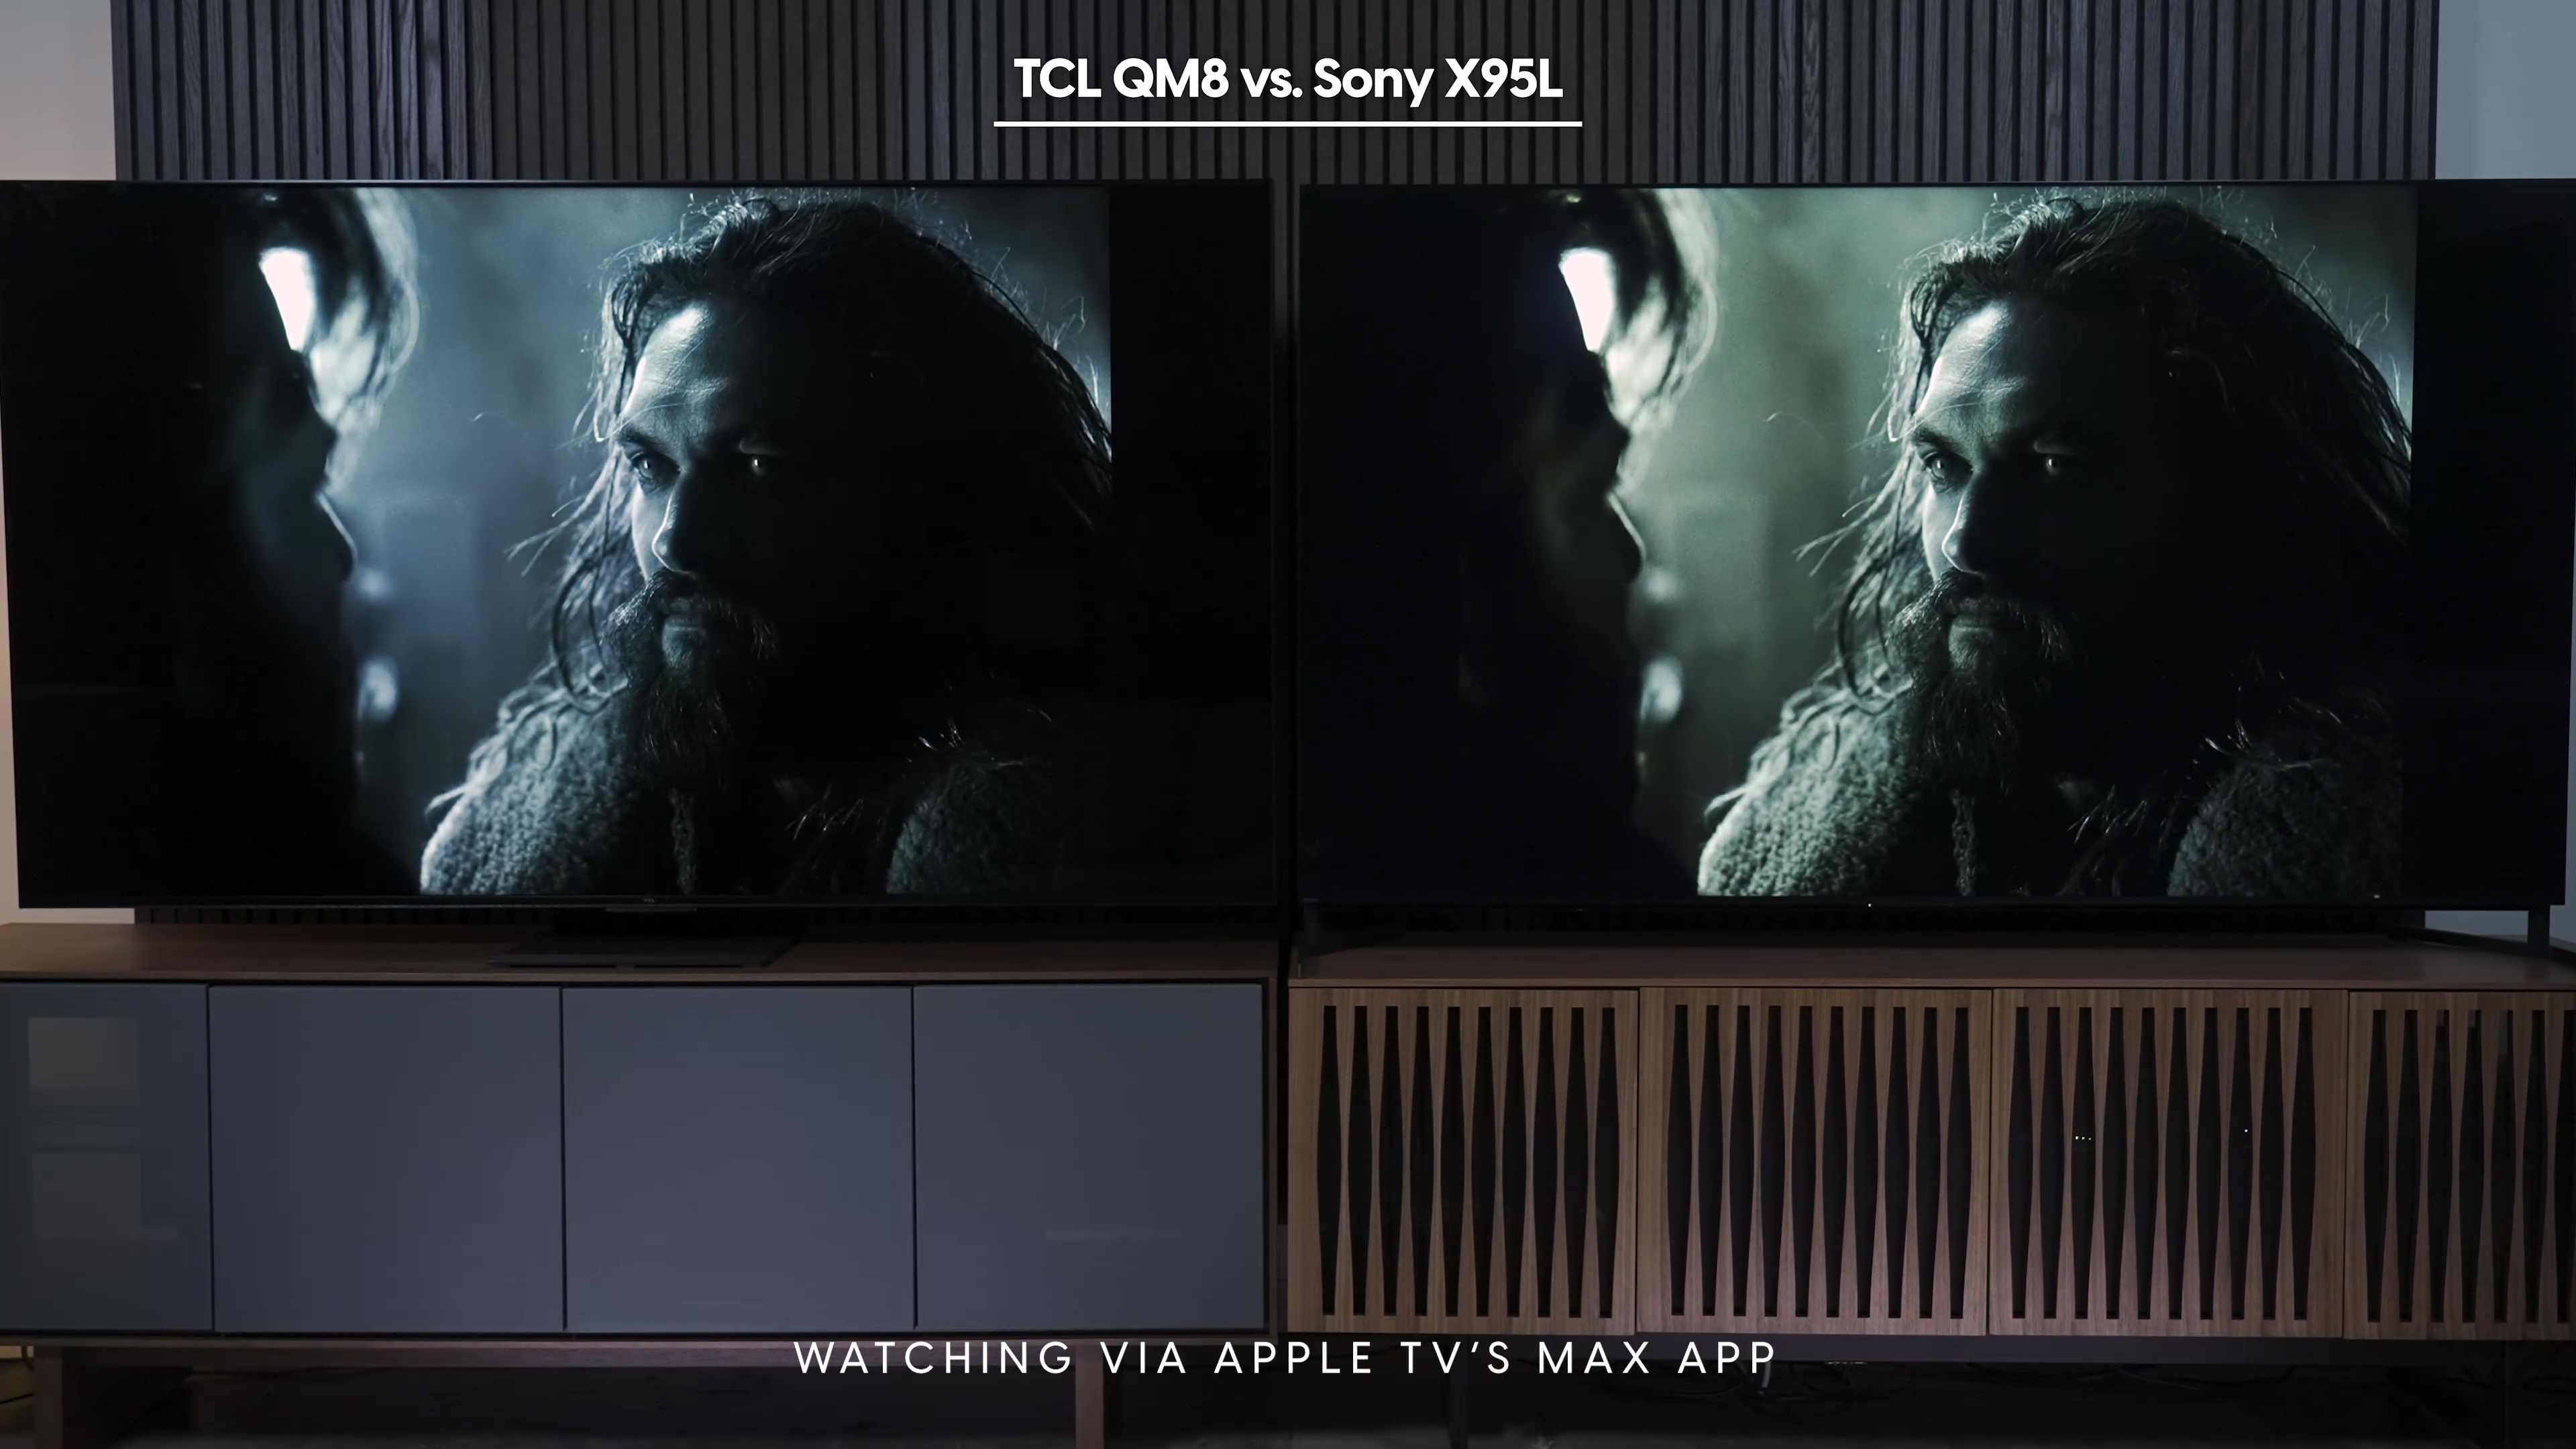 सोनी ब्राविया X95L बनाम TCL QM8 पर AppleTV मैक्स ऐप पर देखे गए जस्टिस लीग के स्क्रीन ग्रैब की साथ-साथ तुलना।